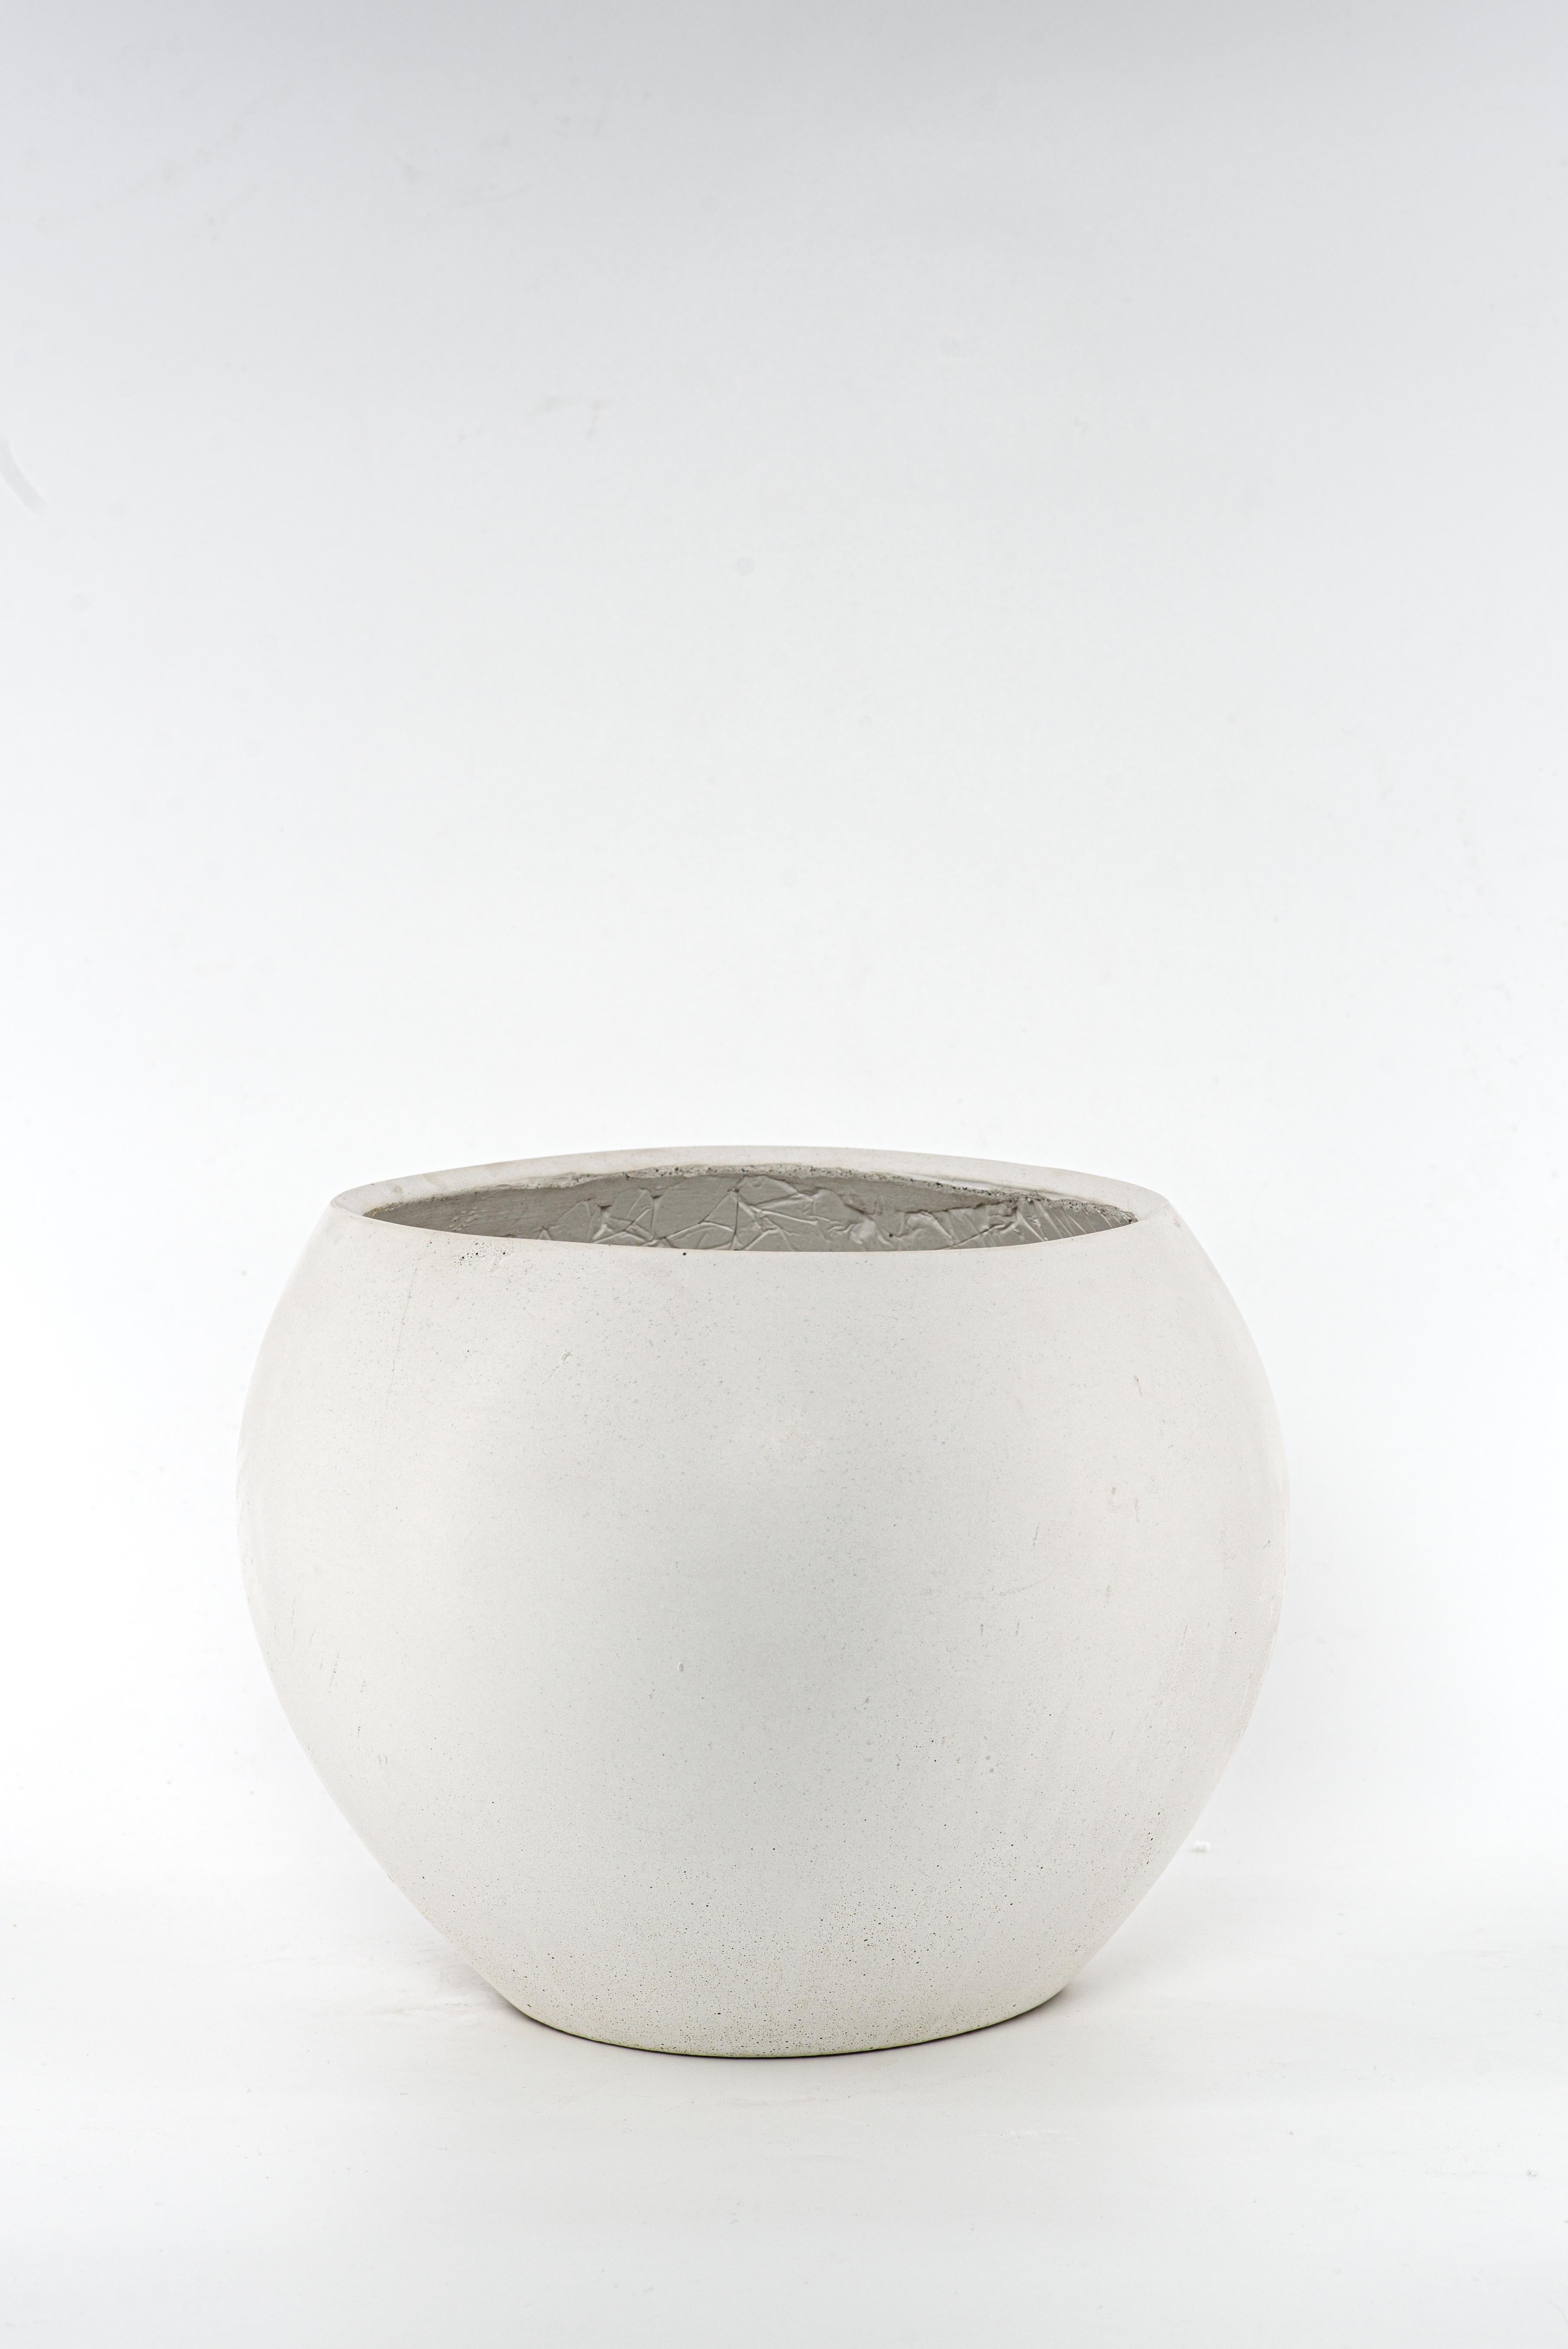 Die Linie Zazen kombiniert organische Formen mit der Textur von Beton und erweckt eine Familie von vier Vasen mit hohem Wiedererkennungswert zum Leben.
Jede Vase wird aus einem monolithischen Betonguss hergestellt. Das Design von Zazen ermöglicht